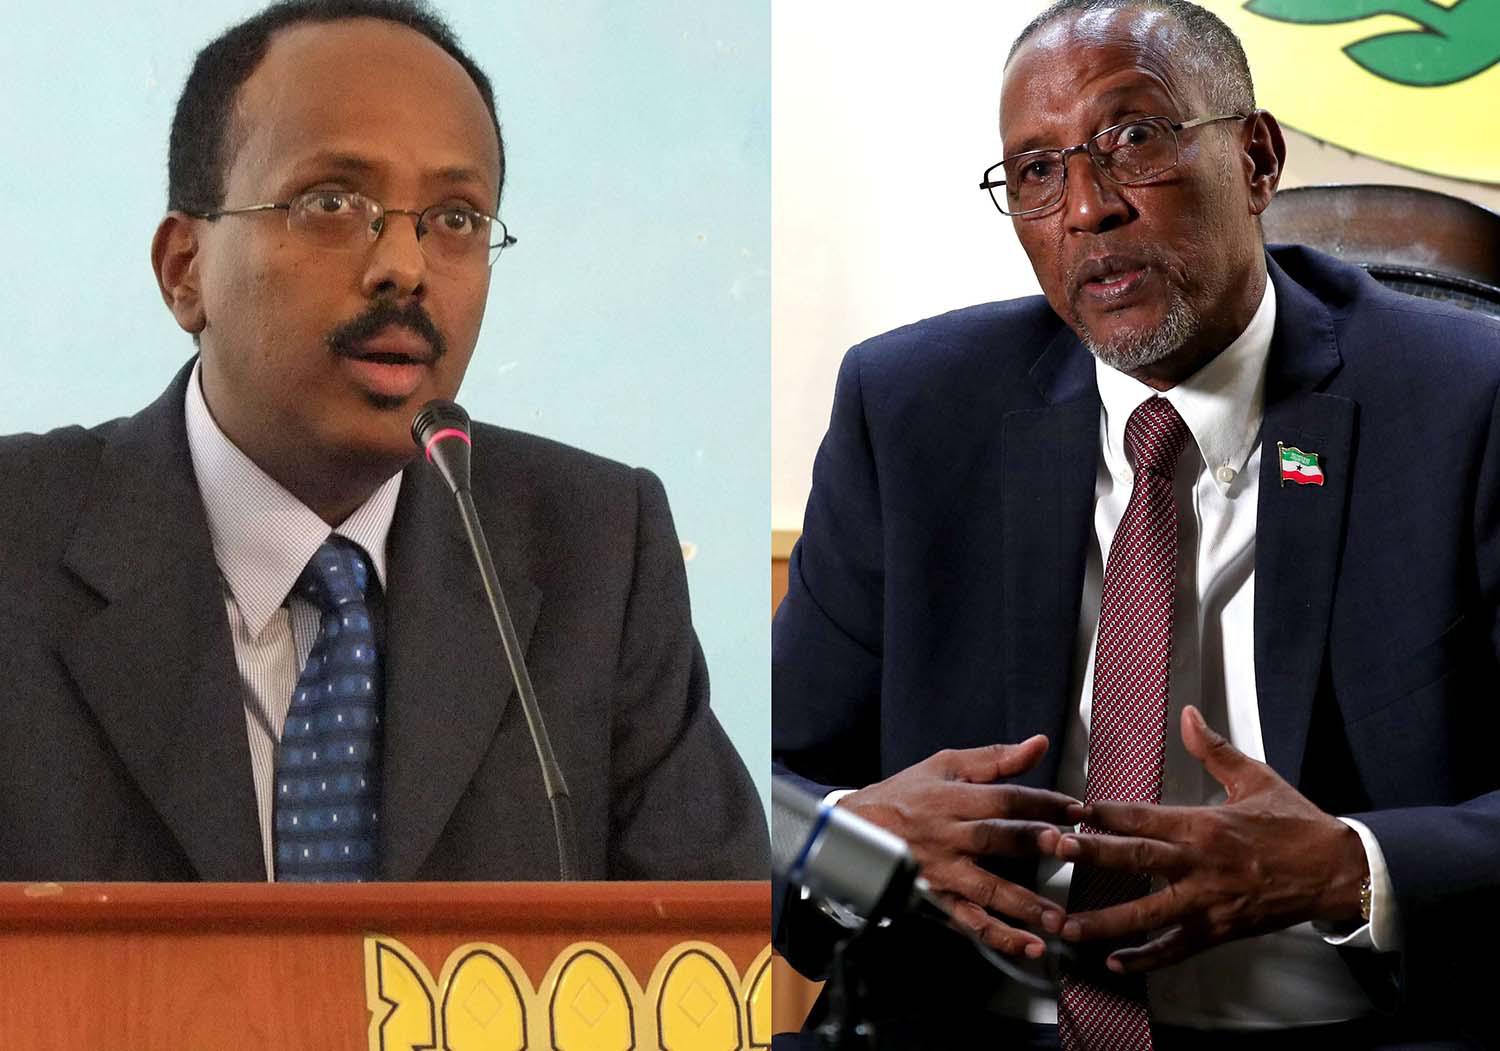 Somali President Farmajo (L) and Somaliland President Bihi